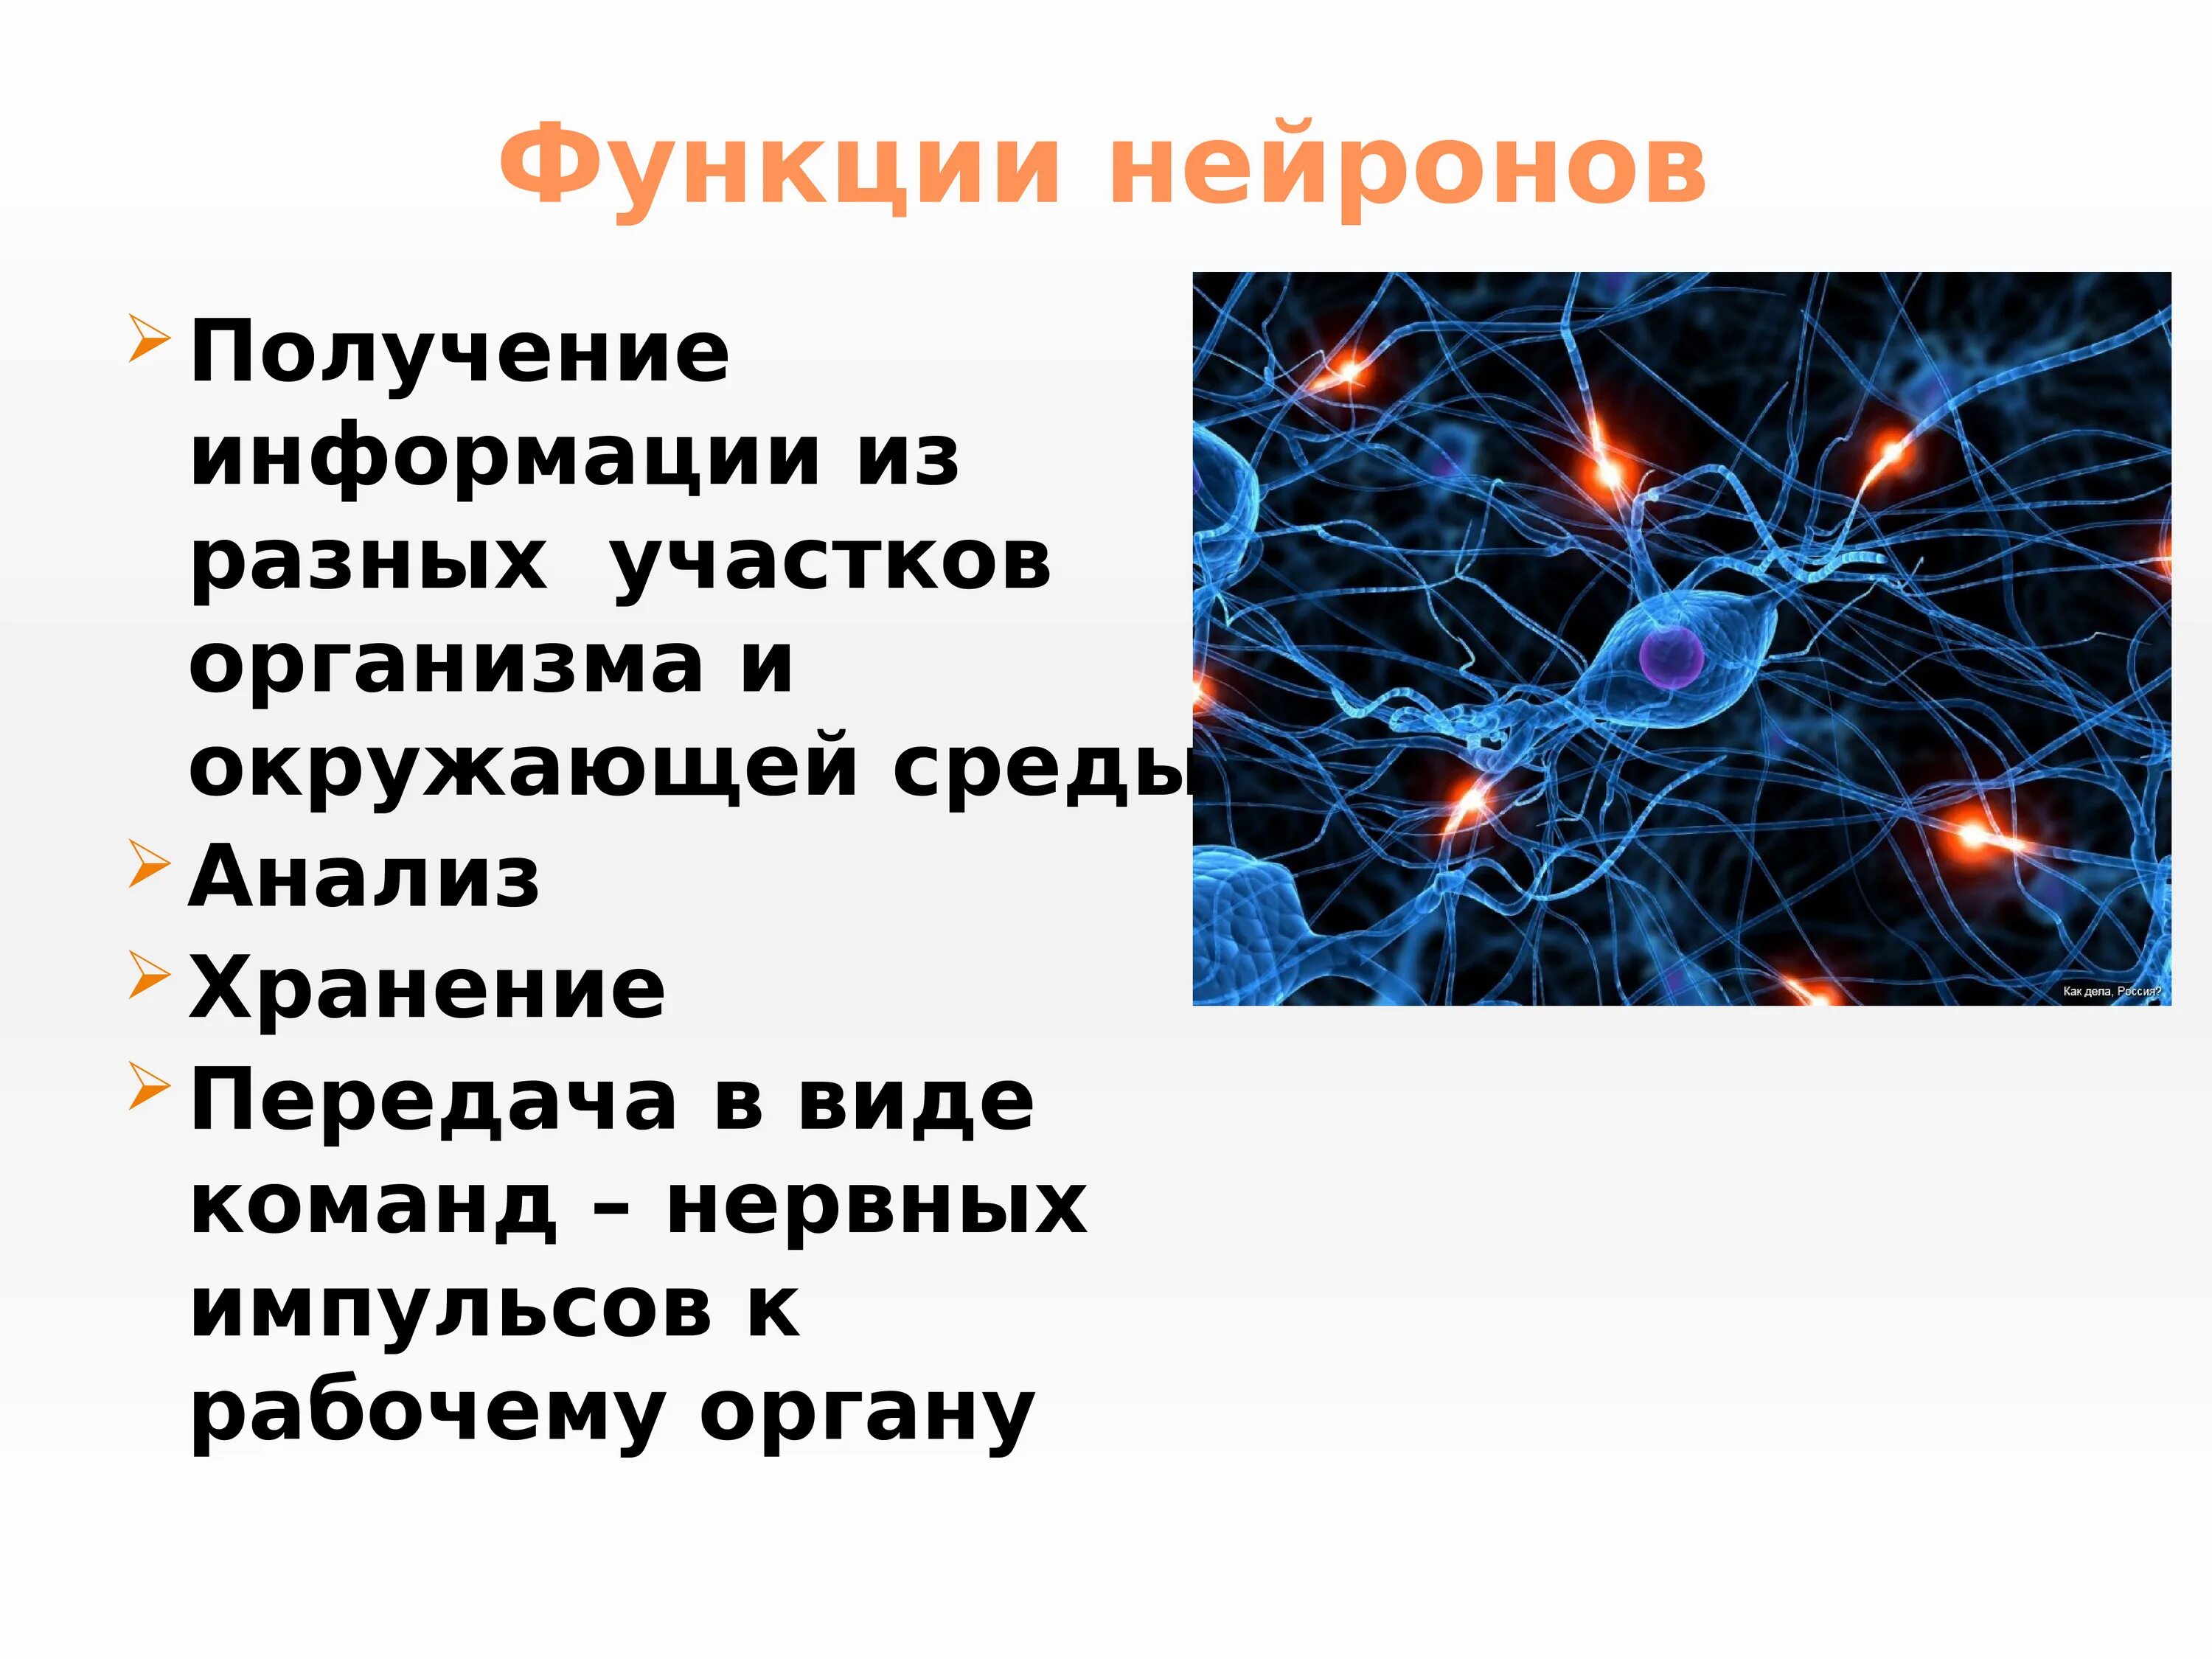 Нервные связи функции. Основный функции нейрона. Функции нервной клетки. Структура и функции нейронов. Функции нервной клетки человека.